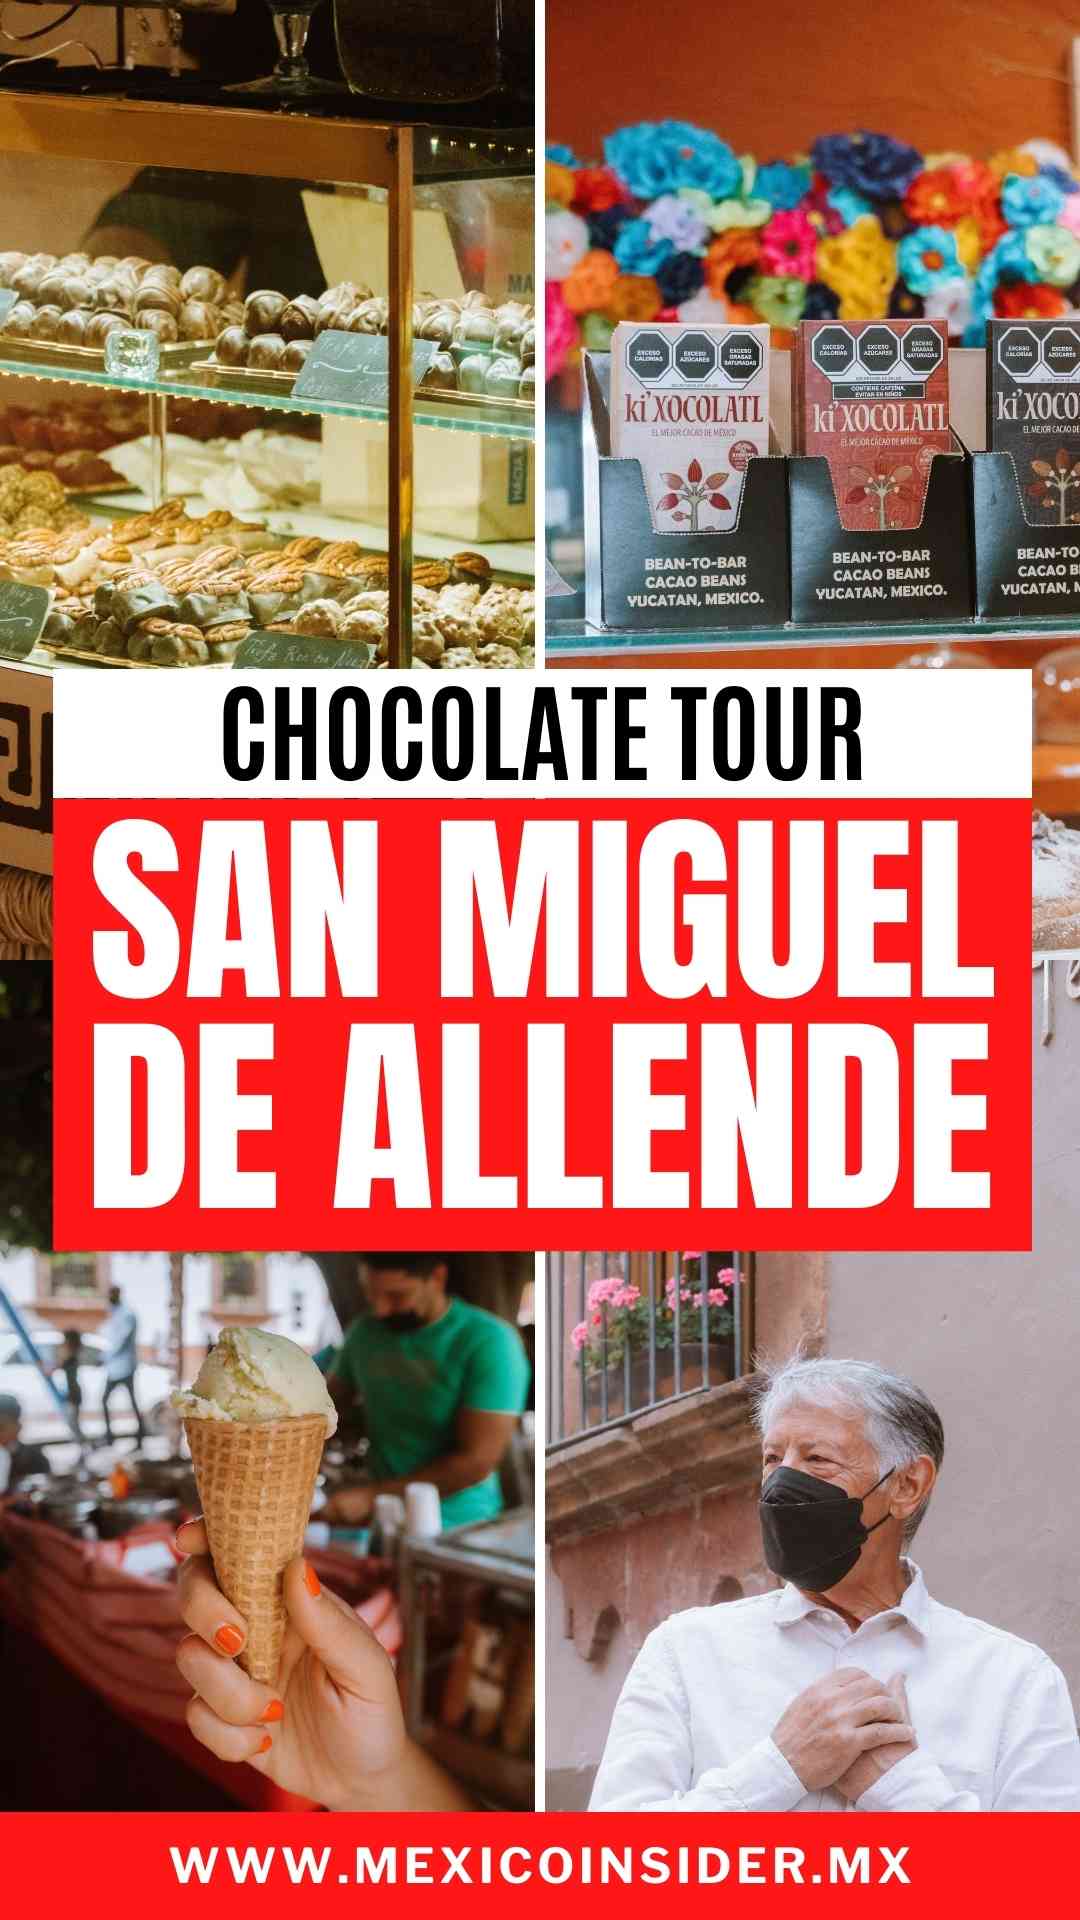 San Miguel de Allende chocolate tour